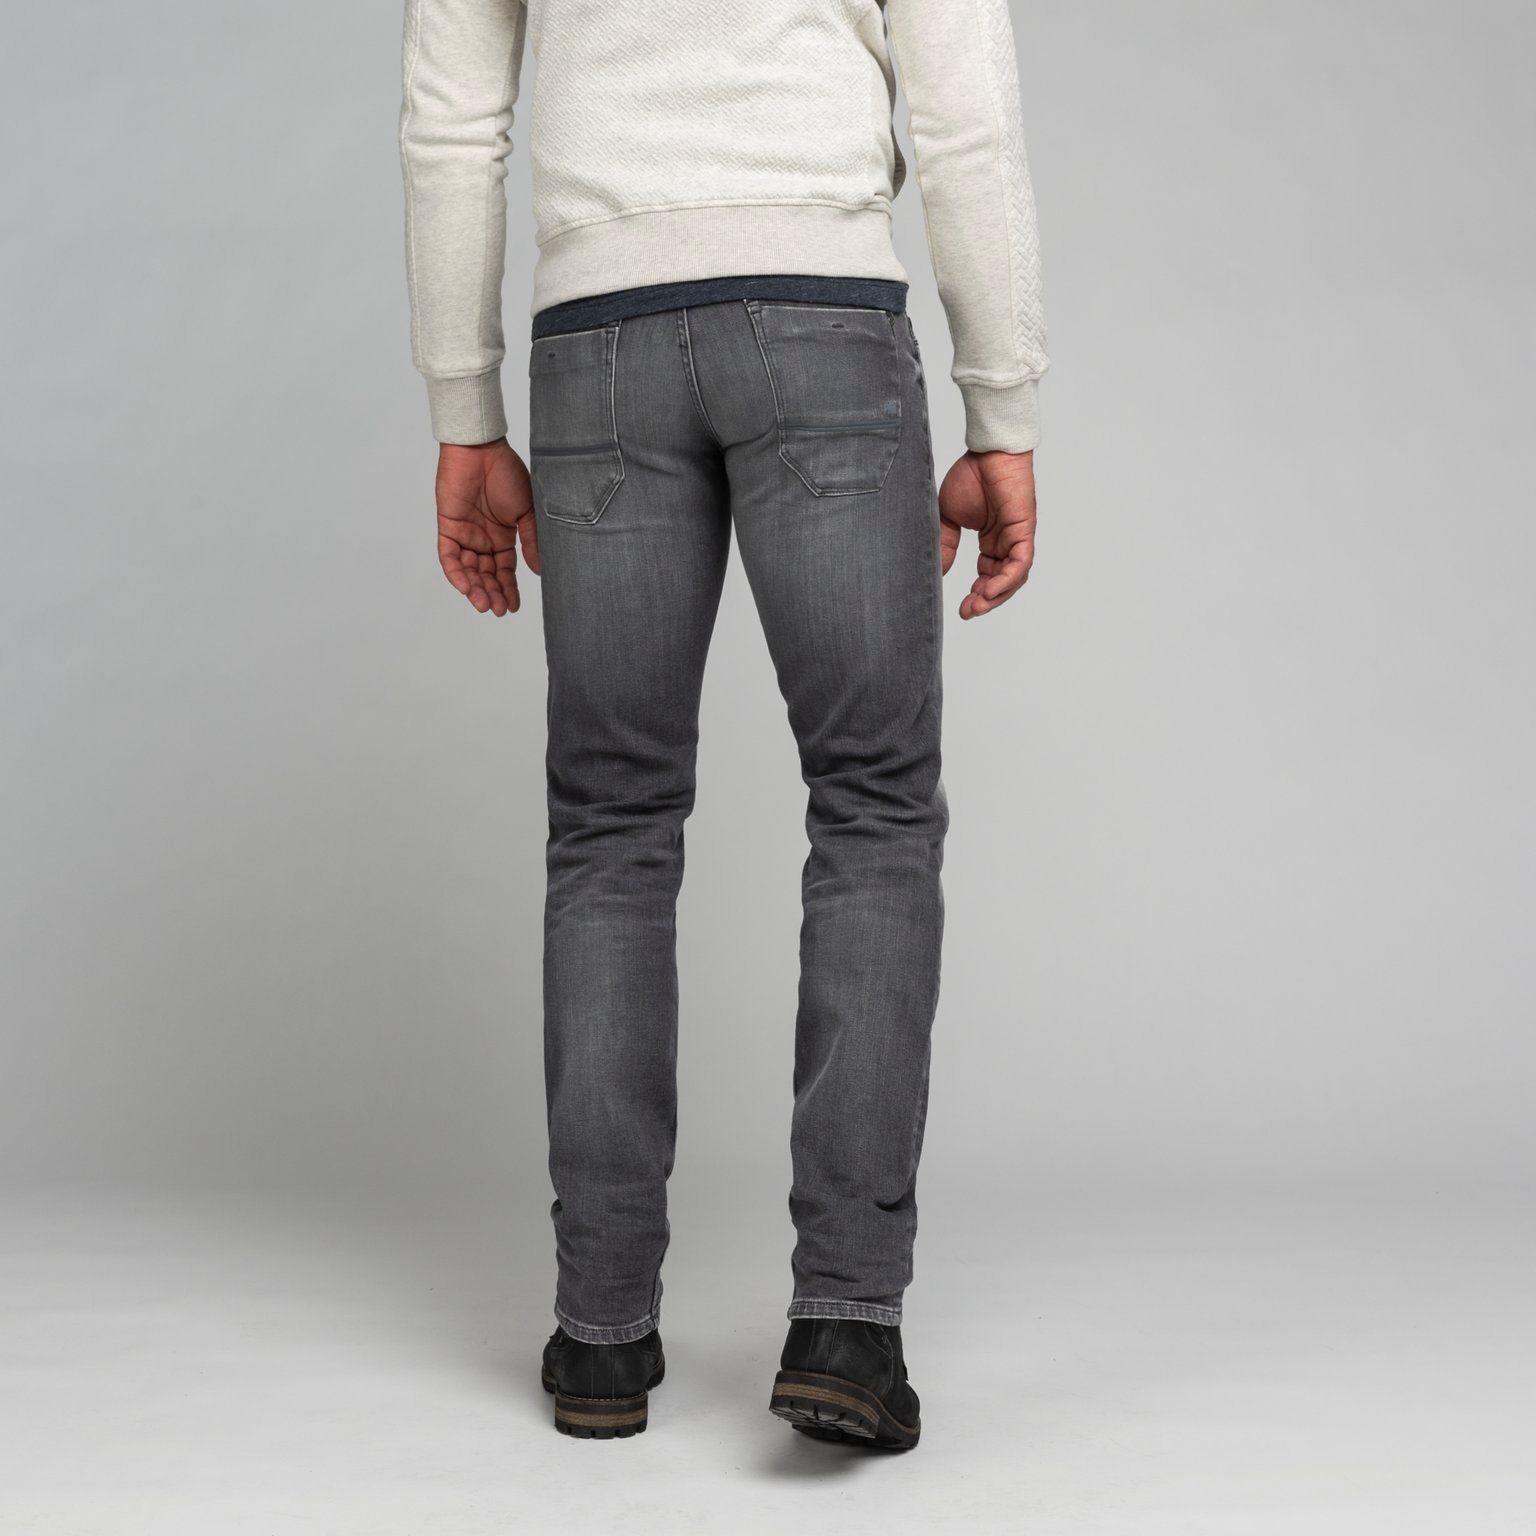 PME LEGEND 5-Pocket-Jeans PME LEGEND PTR650-GWS grey SKYMASTER wash